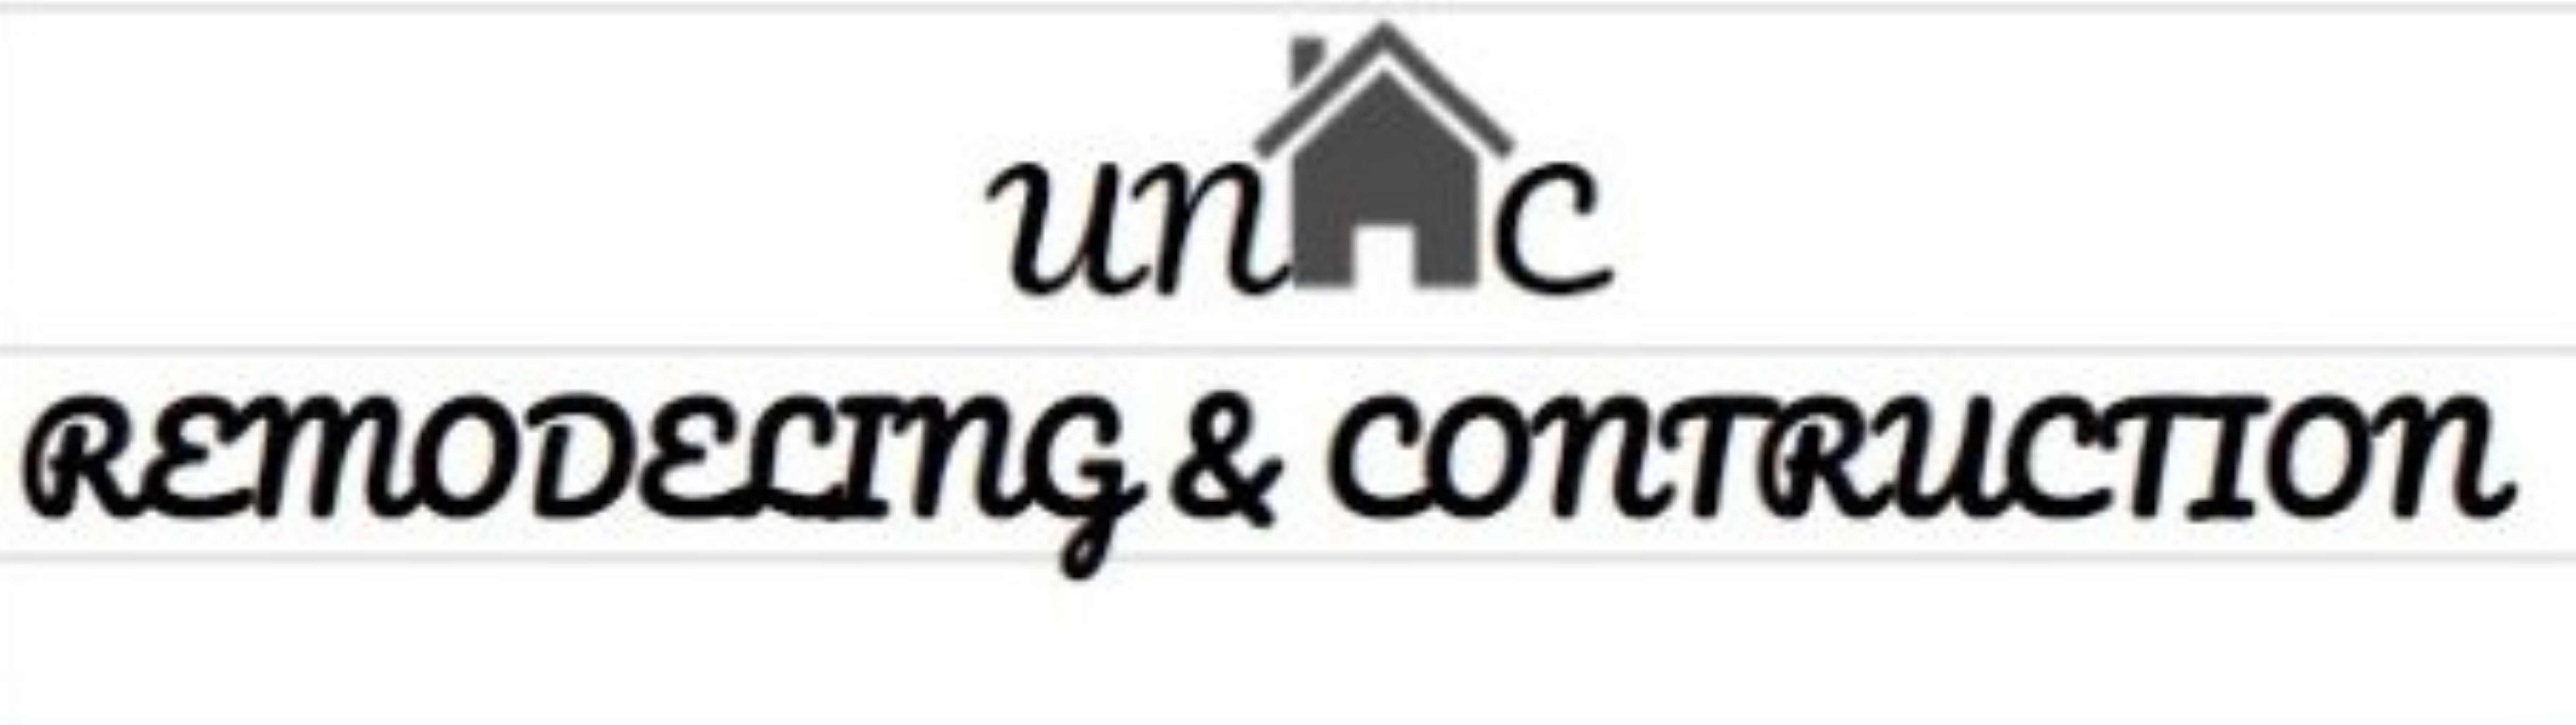 Unic Remodeling & Construction Logo